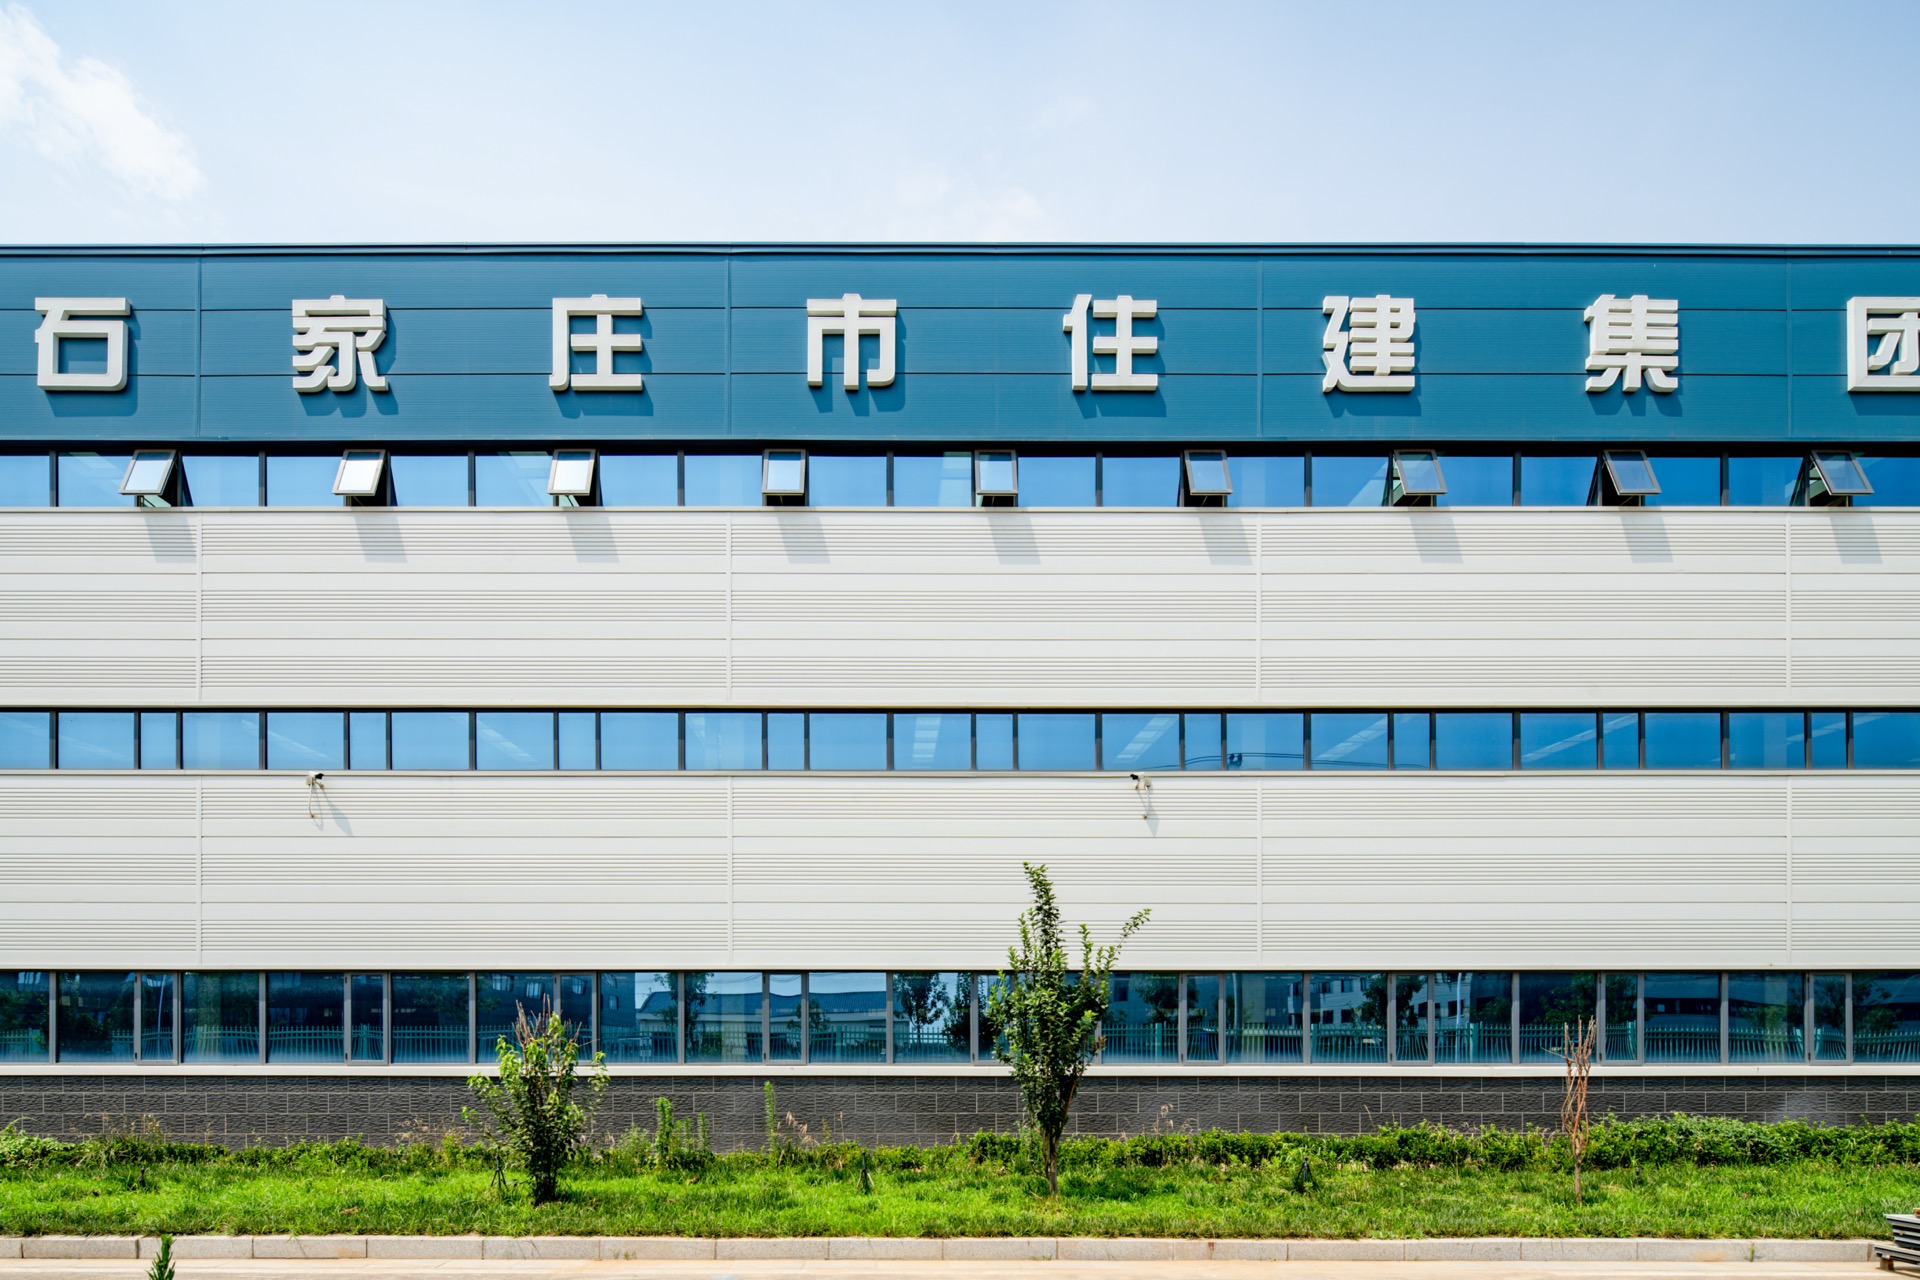 ¡El futuro está aquí! El parque industrial de construcción prefabricada promueve la transformación y modernización de la industria de la construcción(图3)